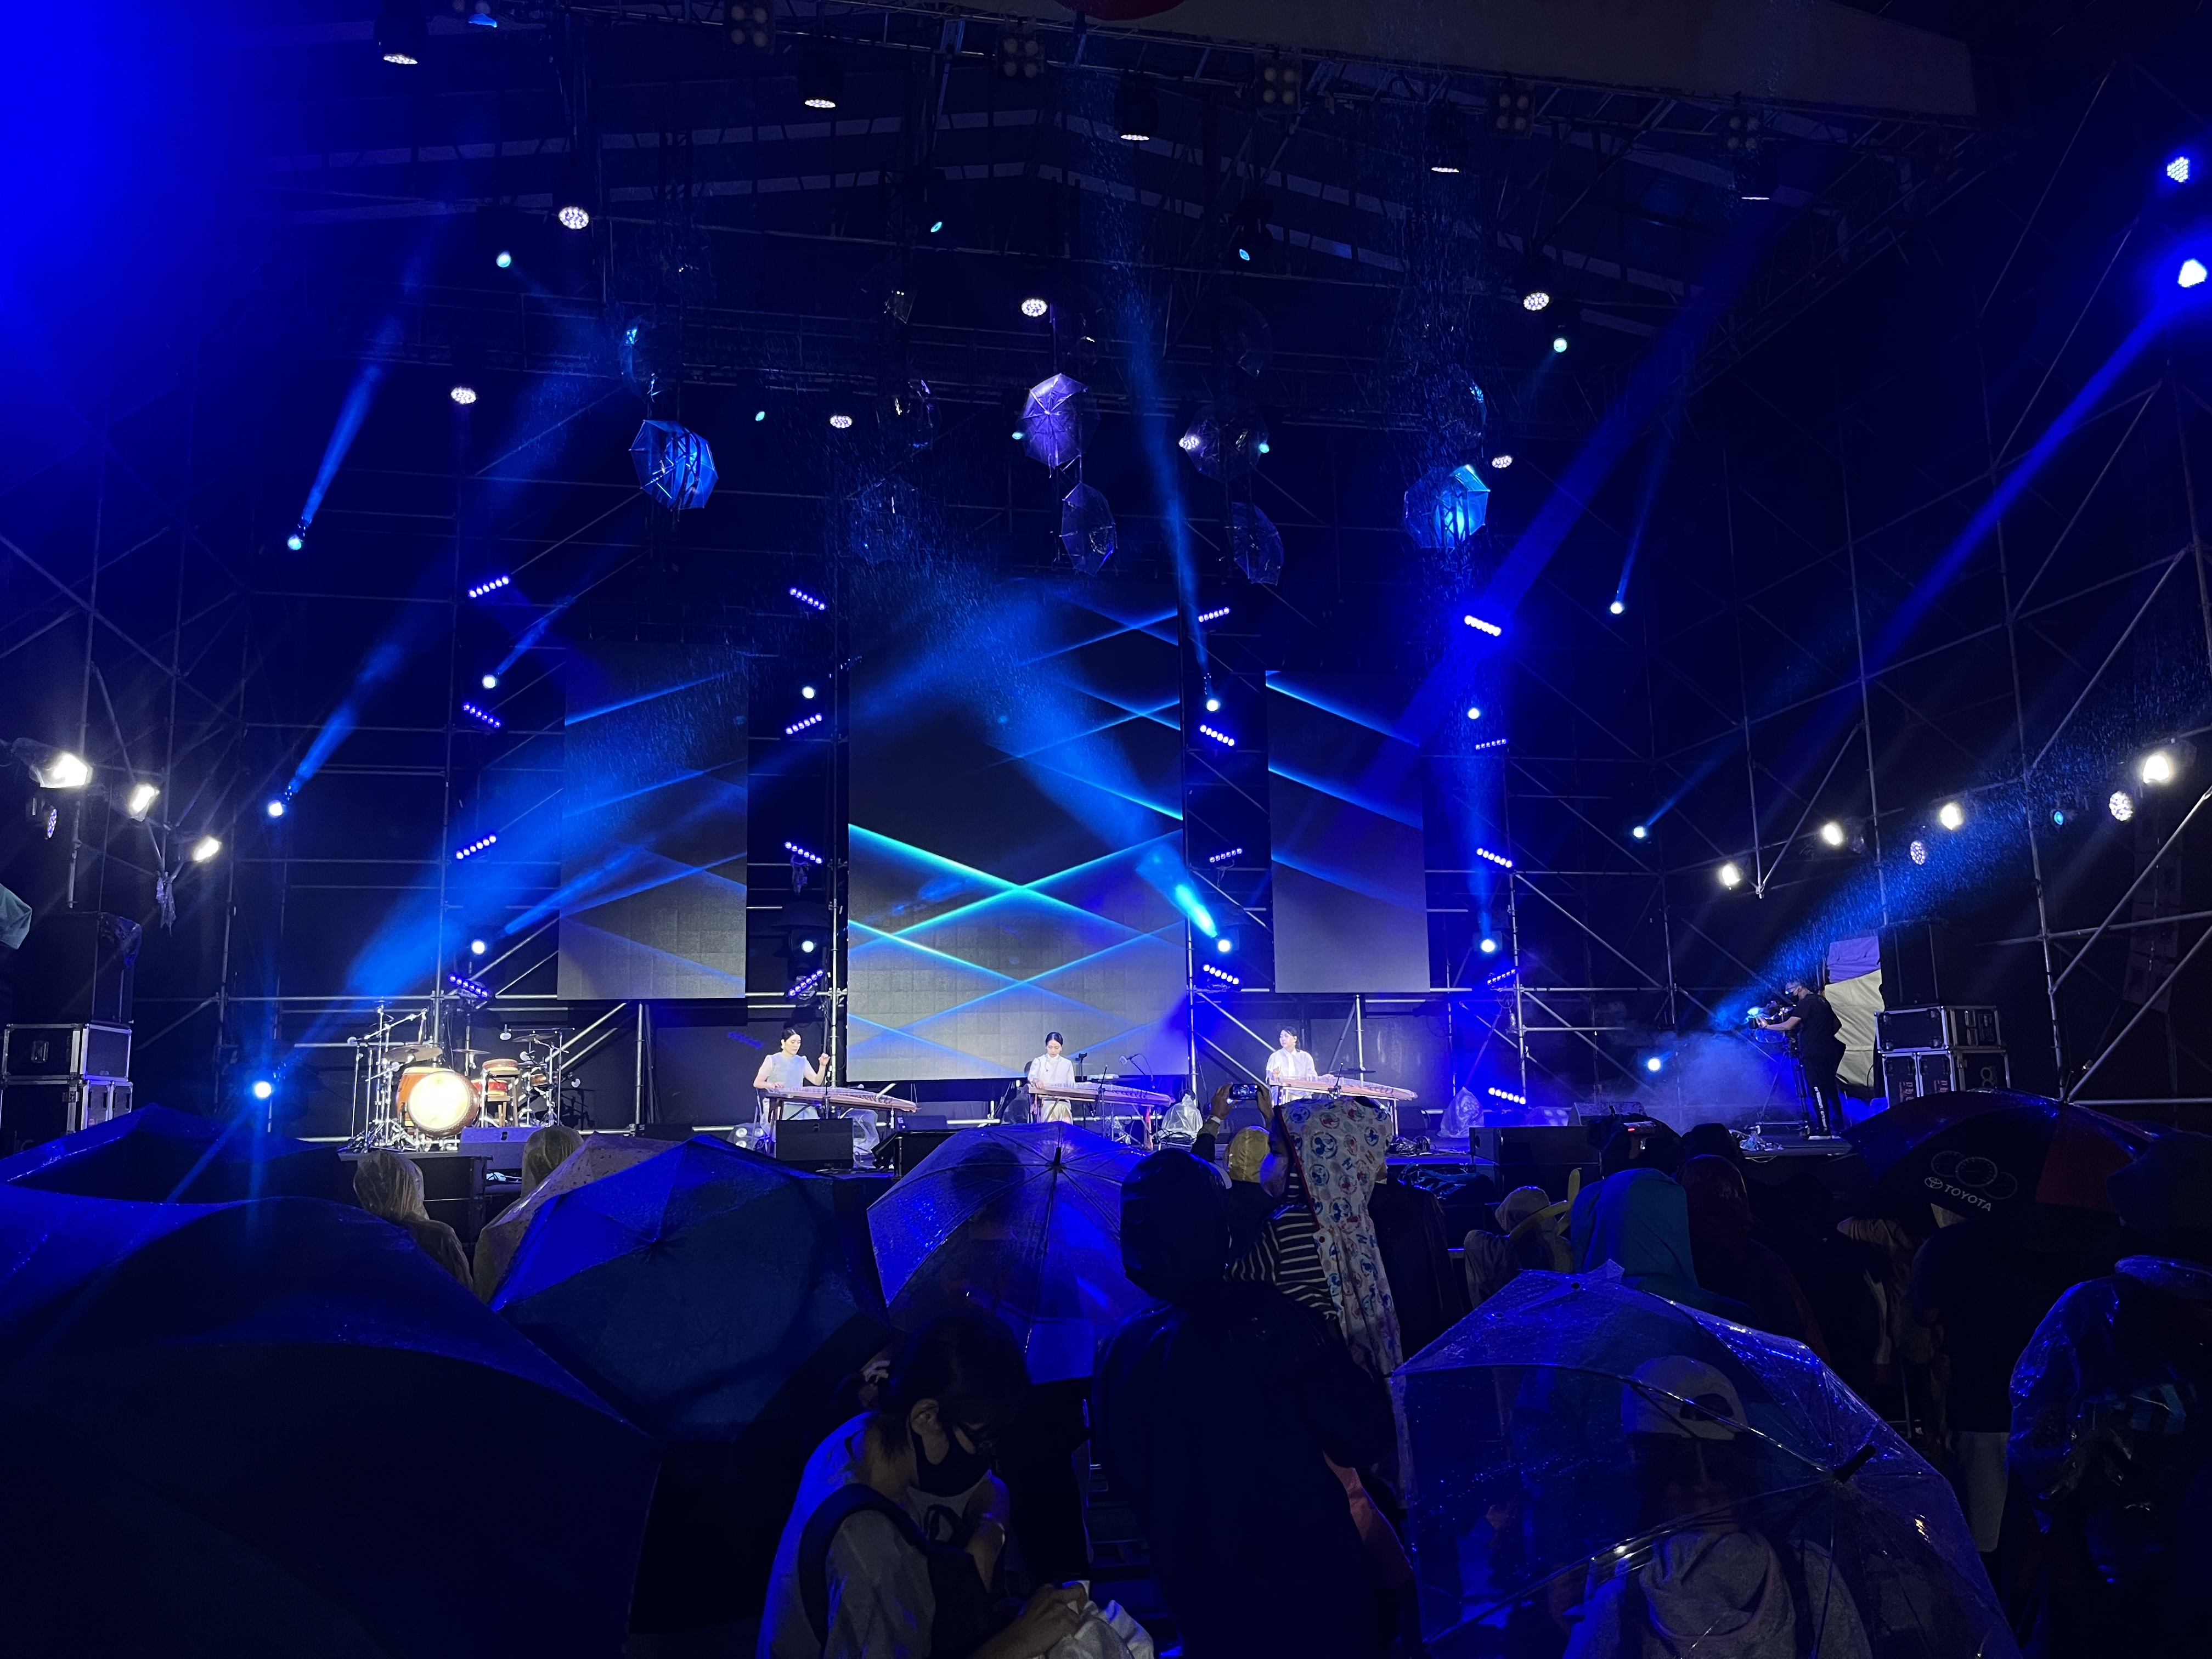 < 헤이스트링의 대만 공연, 우산을 들고 있는 관객들의 모습을 확인할 수 있다 - 출처: 헤이스트링 제공 >